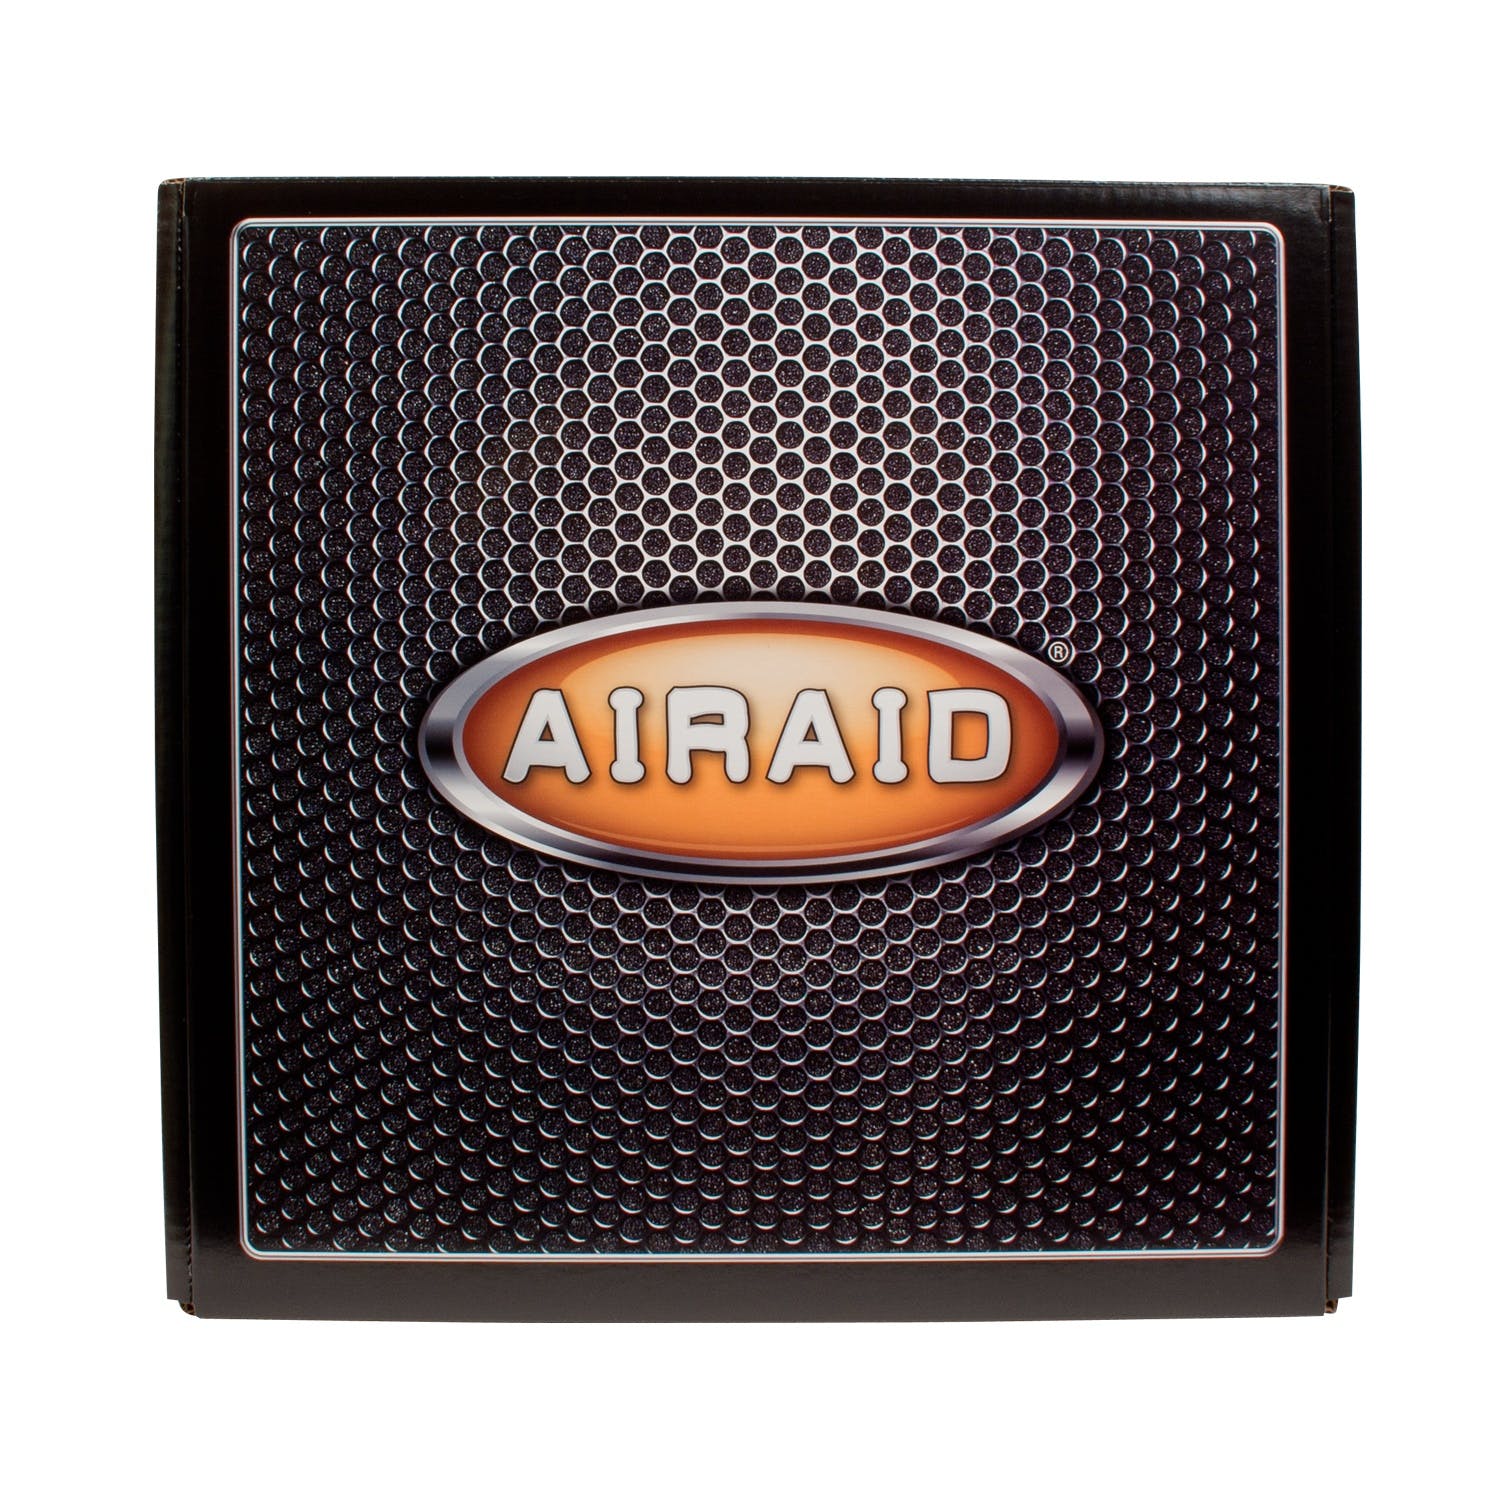 AIRAID 200-215 Performance Air Intake System